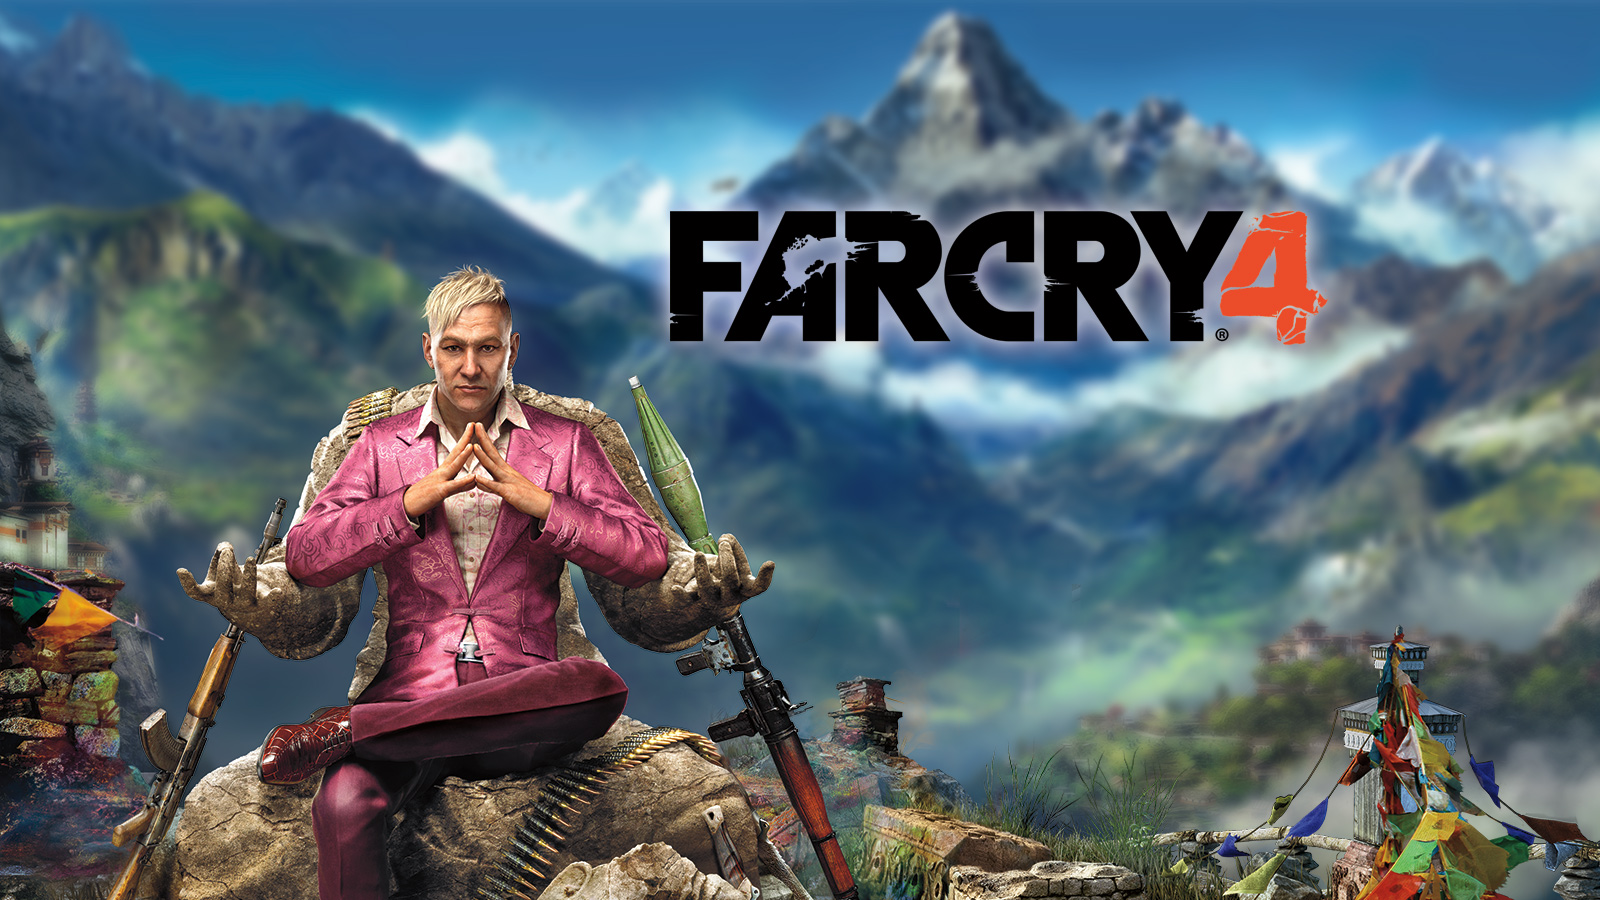 Far cry 4 (Uplay)